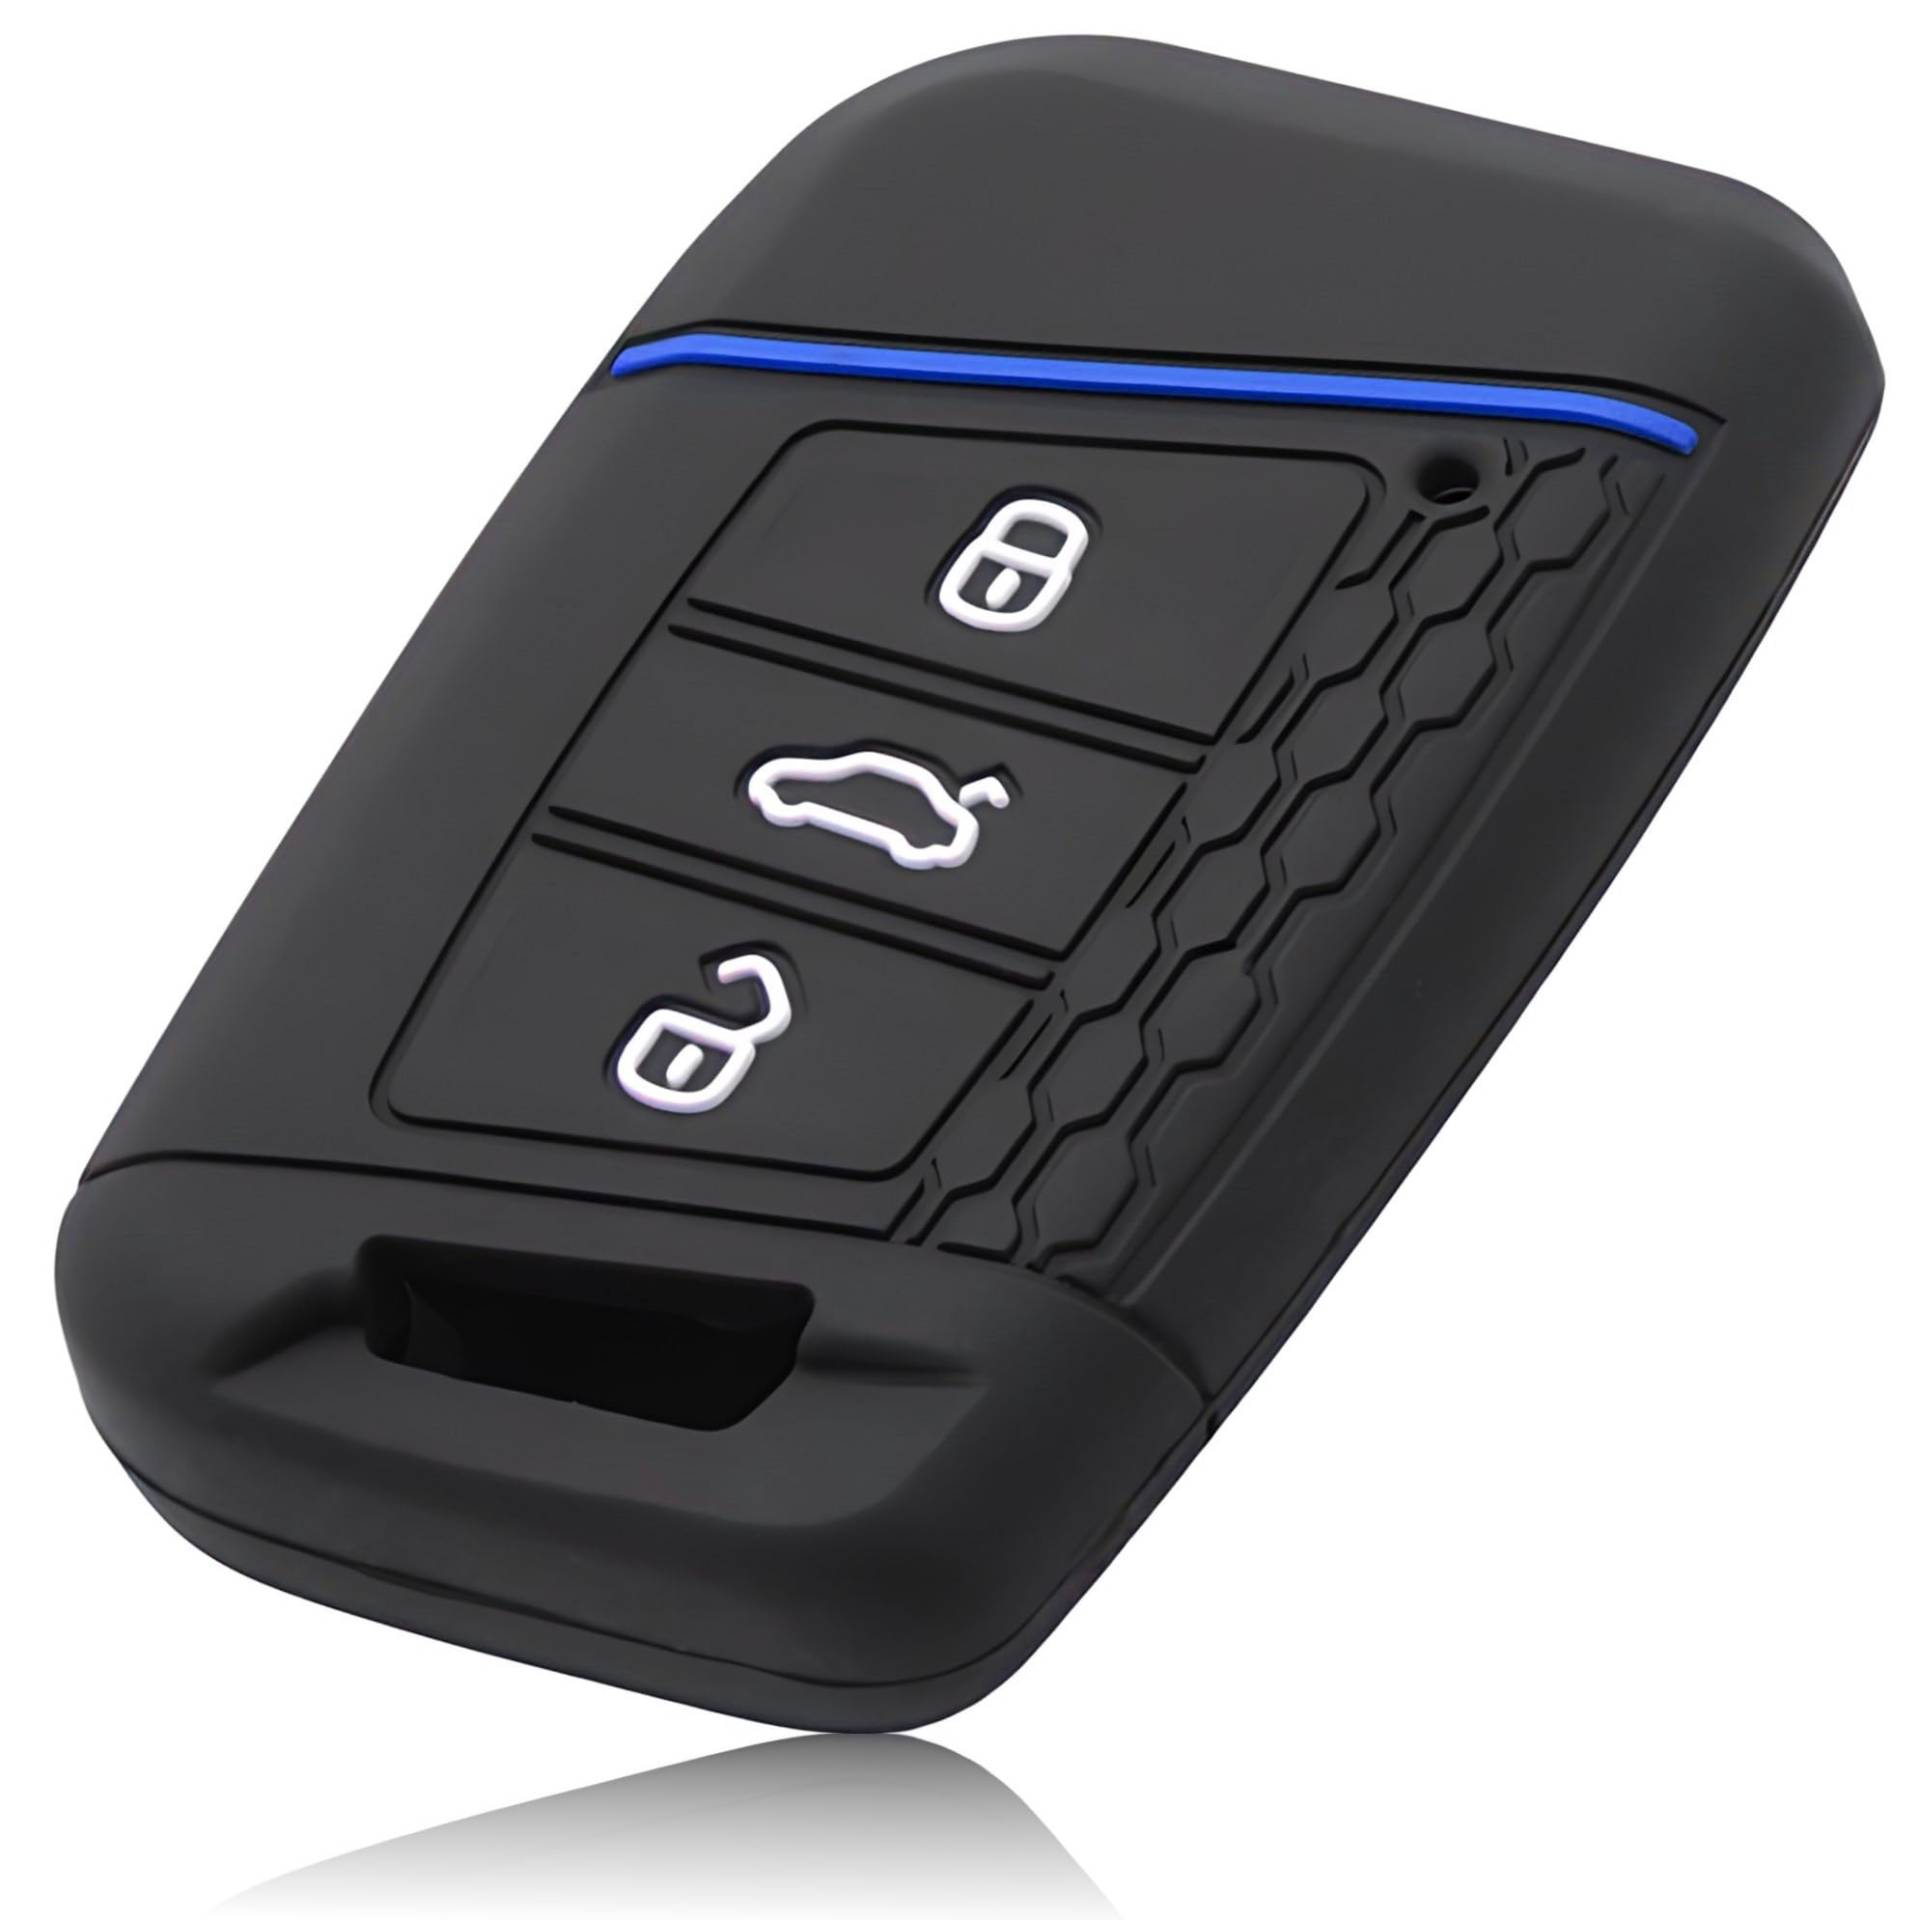 FOAMO Autoschlüssel Hülle Kompatibel mit VW Passat B8, SEAT, SKODA Autoschlüssel - Silikon Schlüsselhülle - Schutz-Hülle für Autoschlüssel Schwarz-Blau von FOAMO